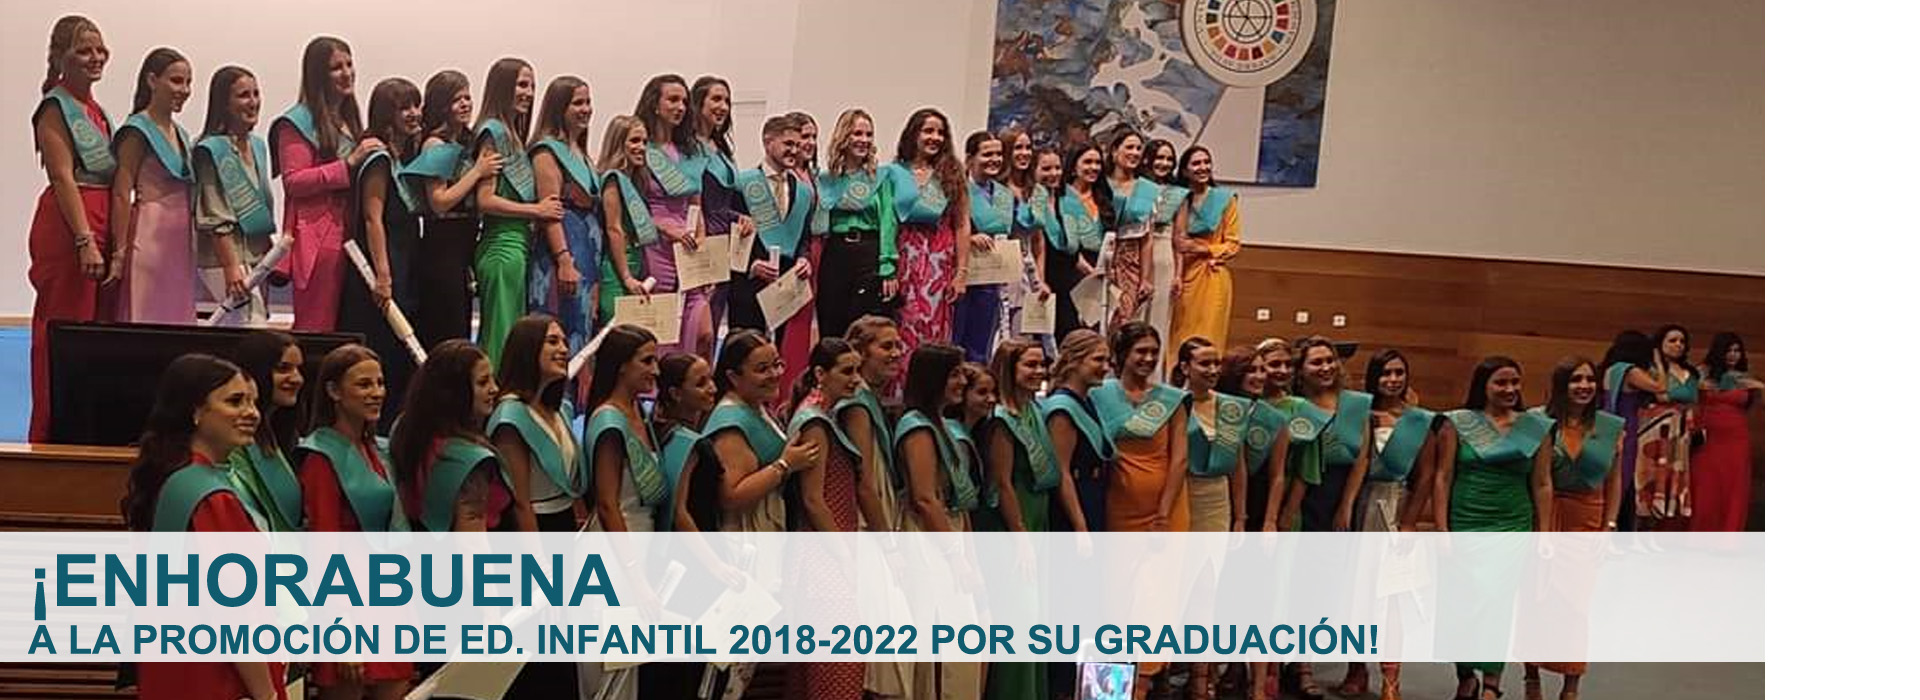 2022/Banners-Decanato2022-19-GraduacionInfantil20182022.jpg